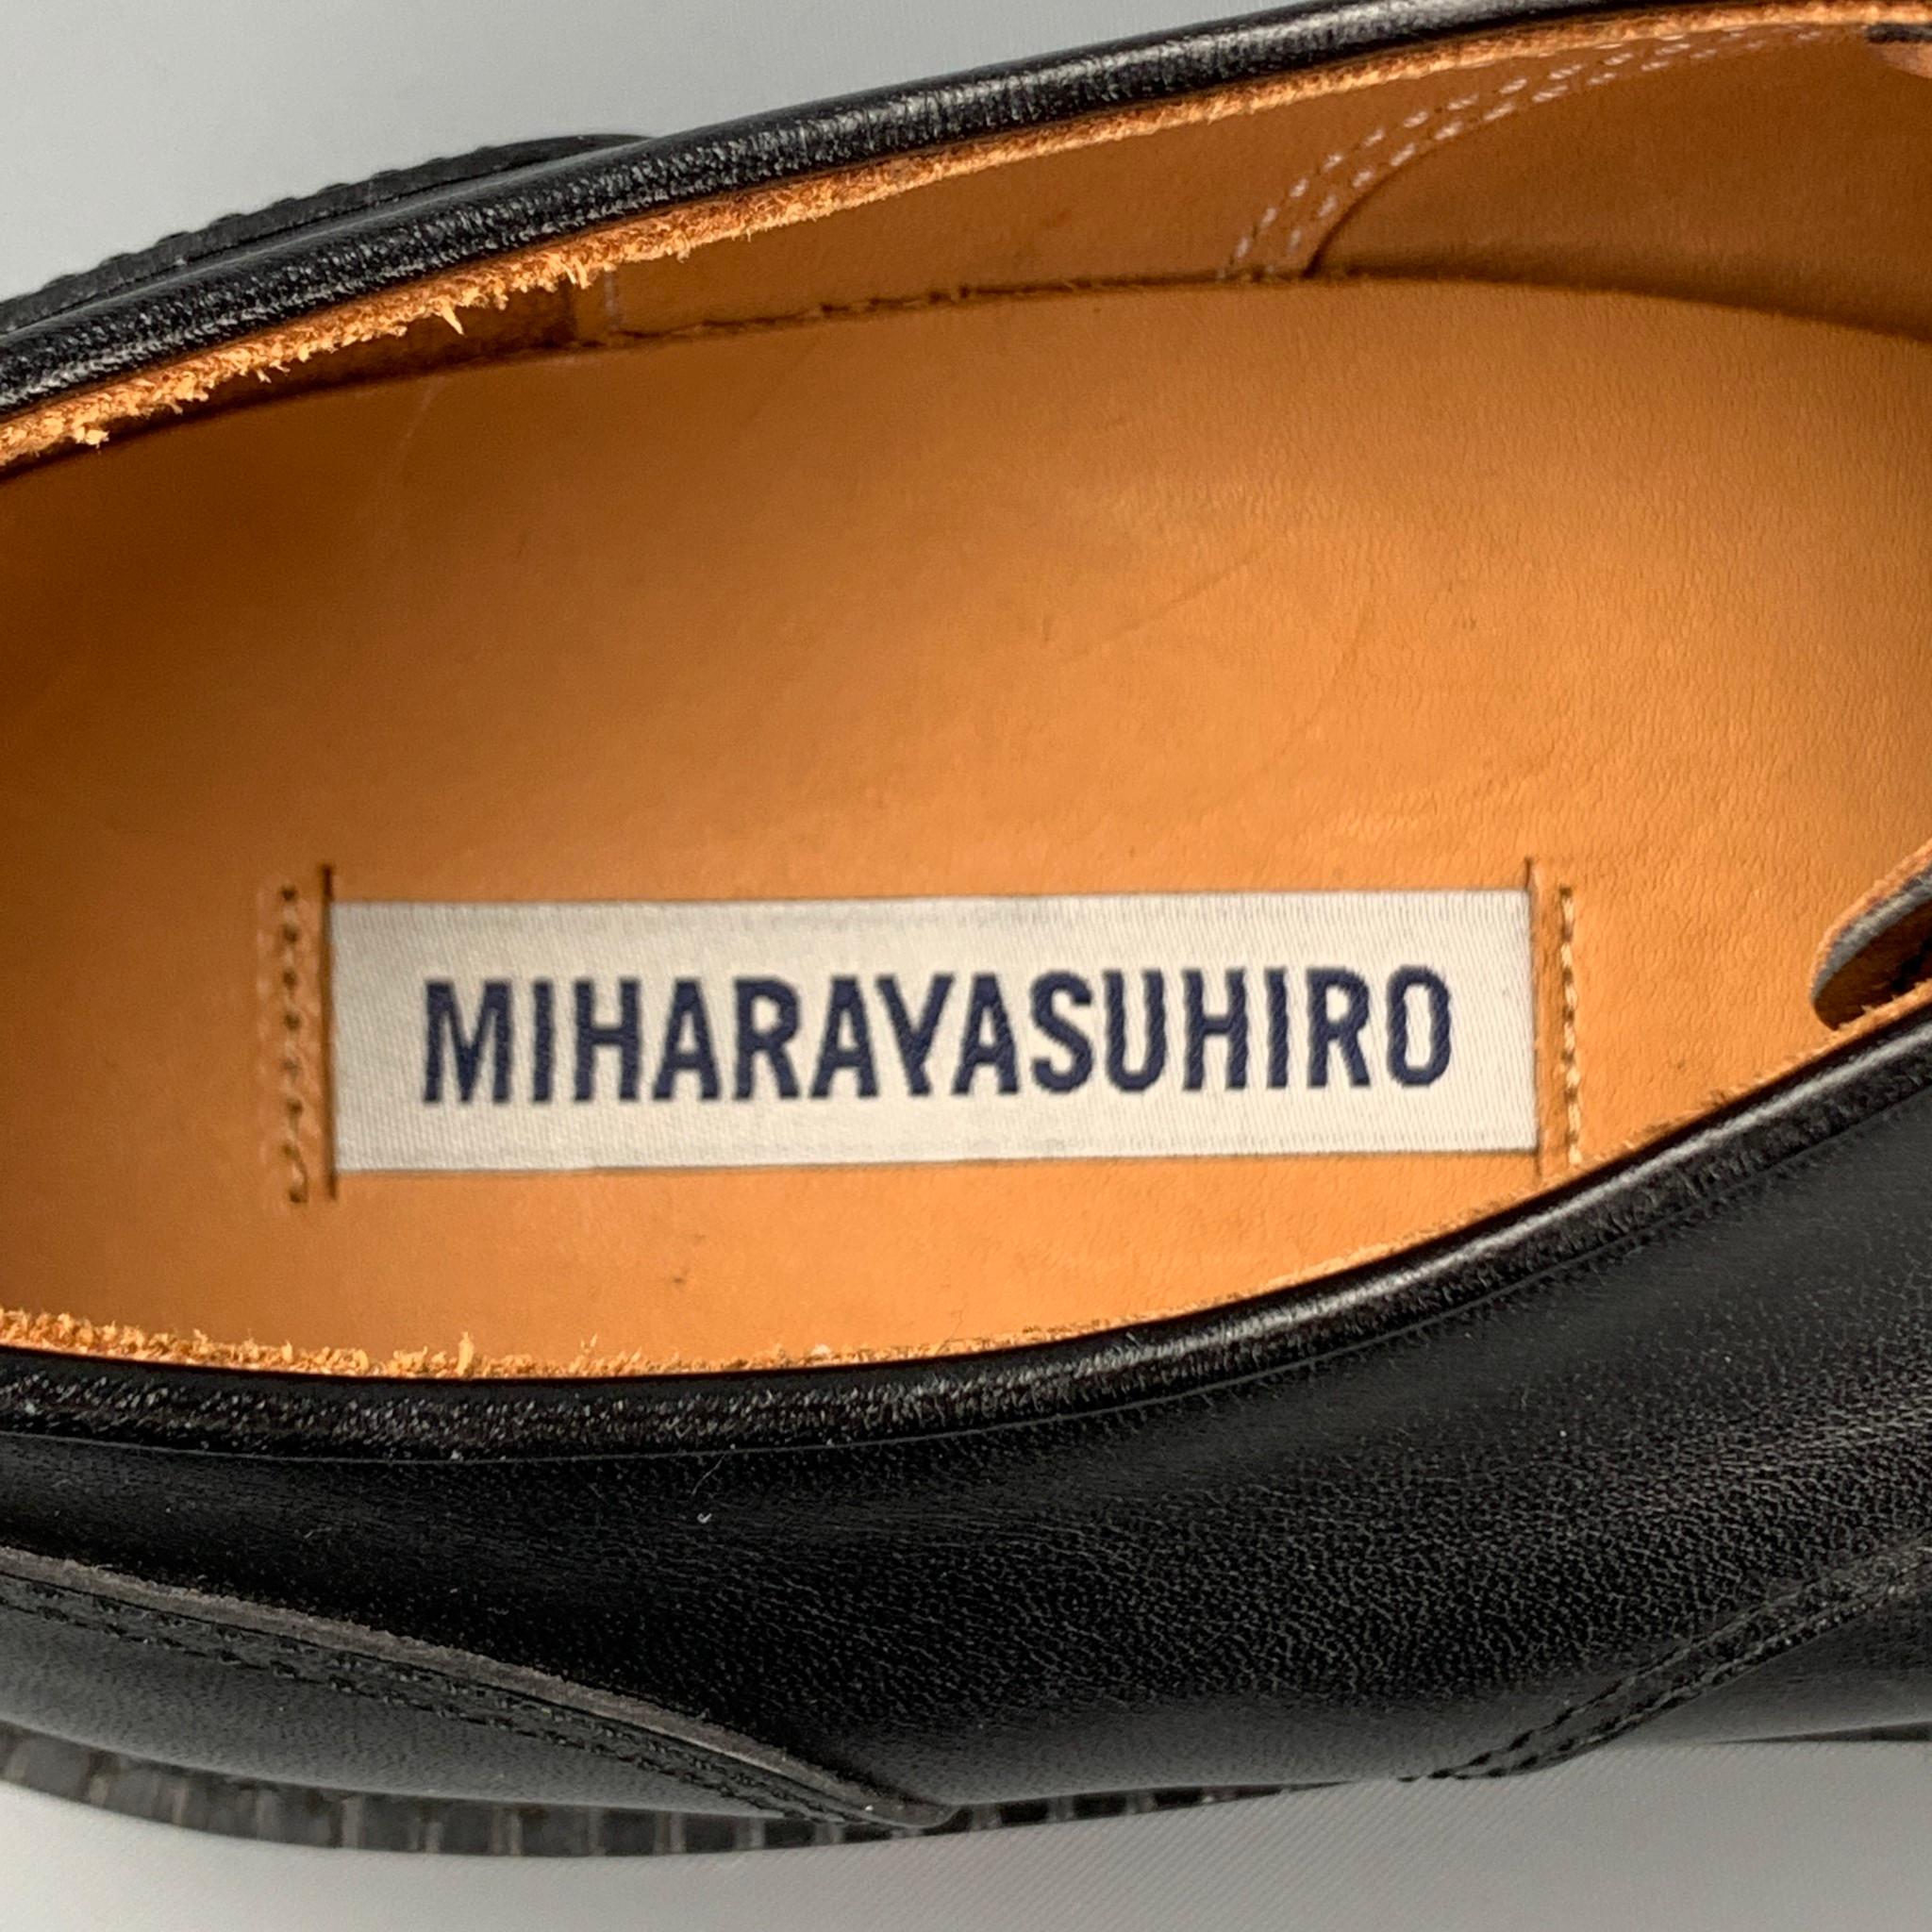 MIHARAYASUHIRO Size 7 Black Leather Cap Toe Lace Up Shoes 2